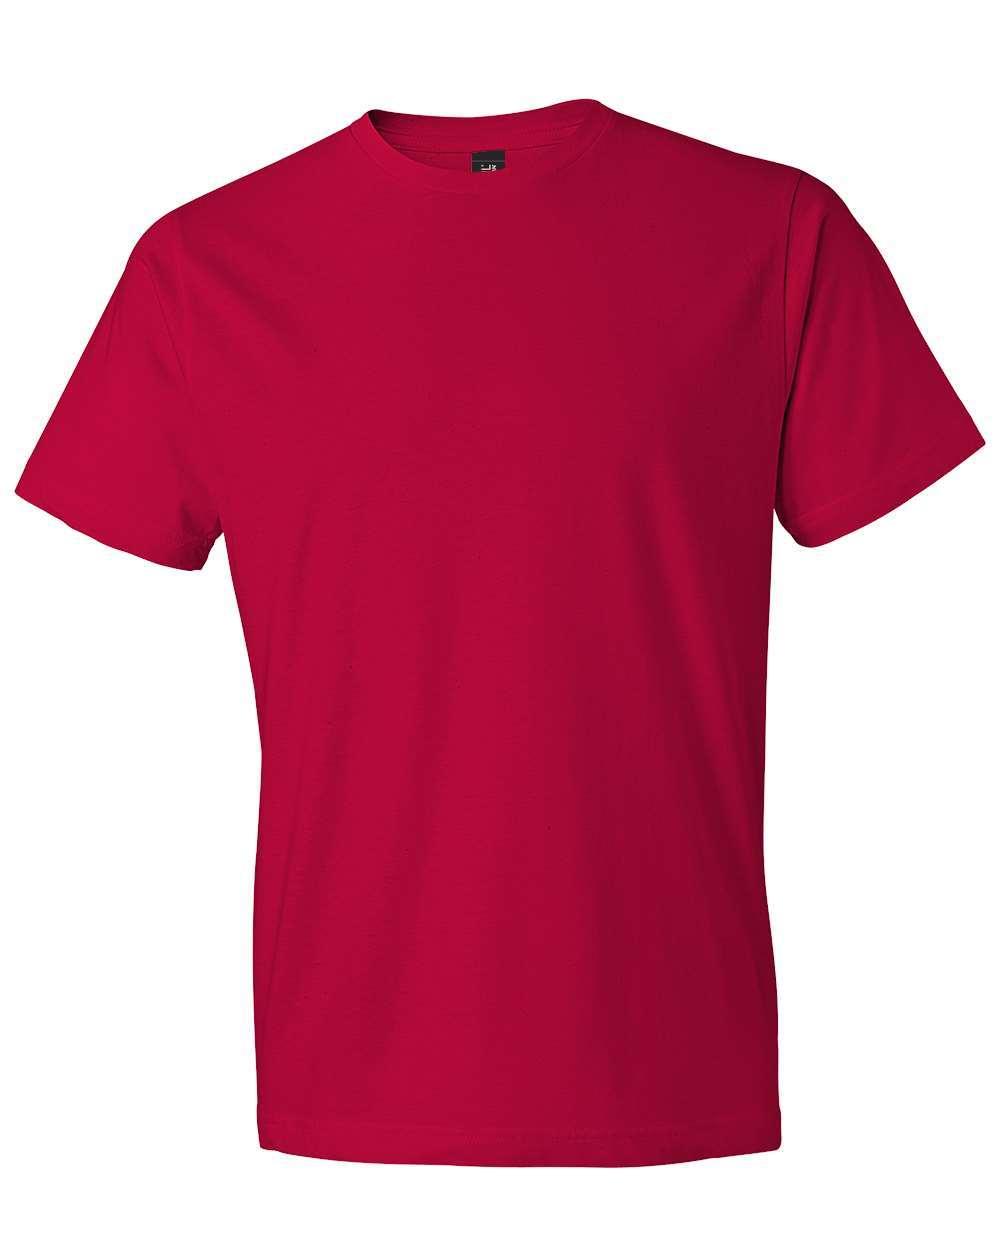 Gildan Softstyle Lightweigh T-shirt-980 - TopKoalaTee